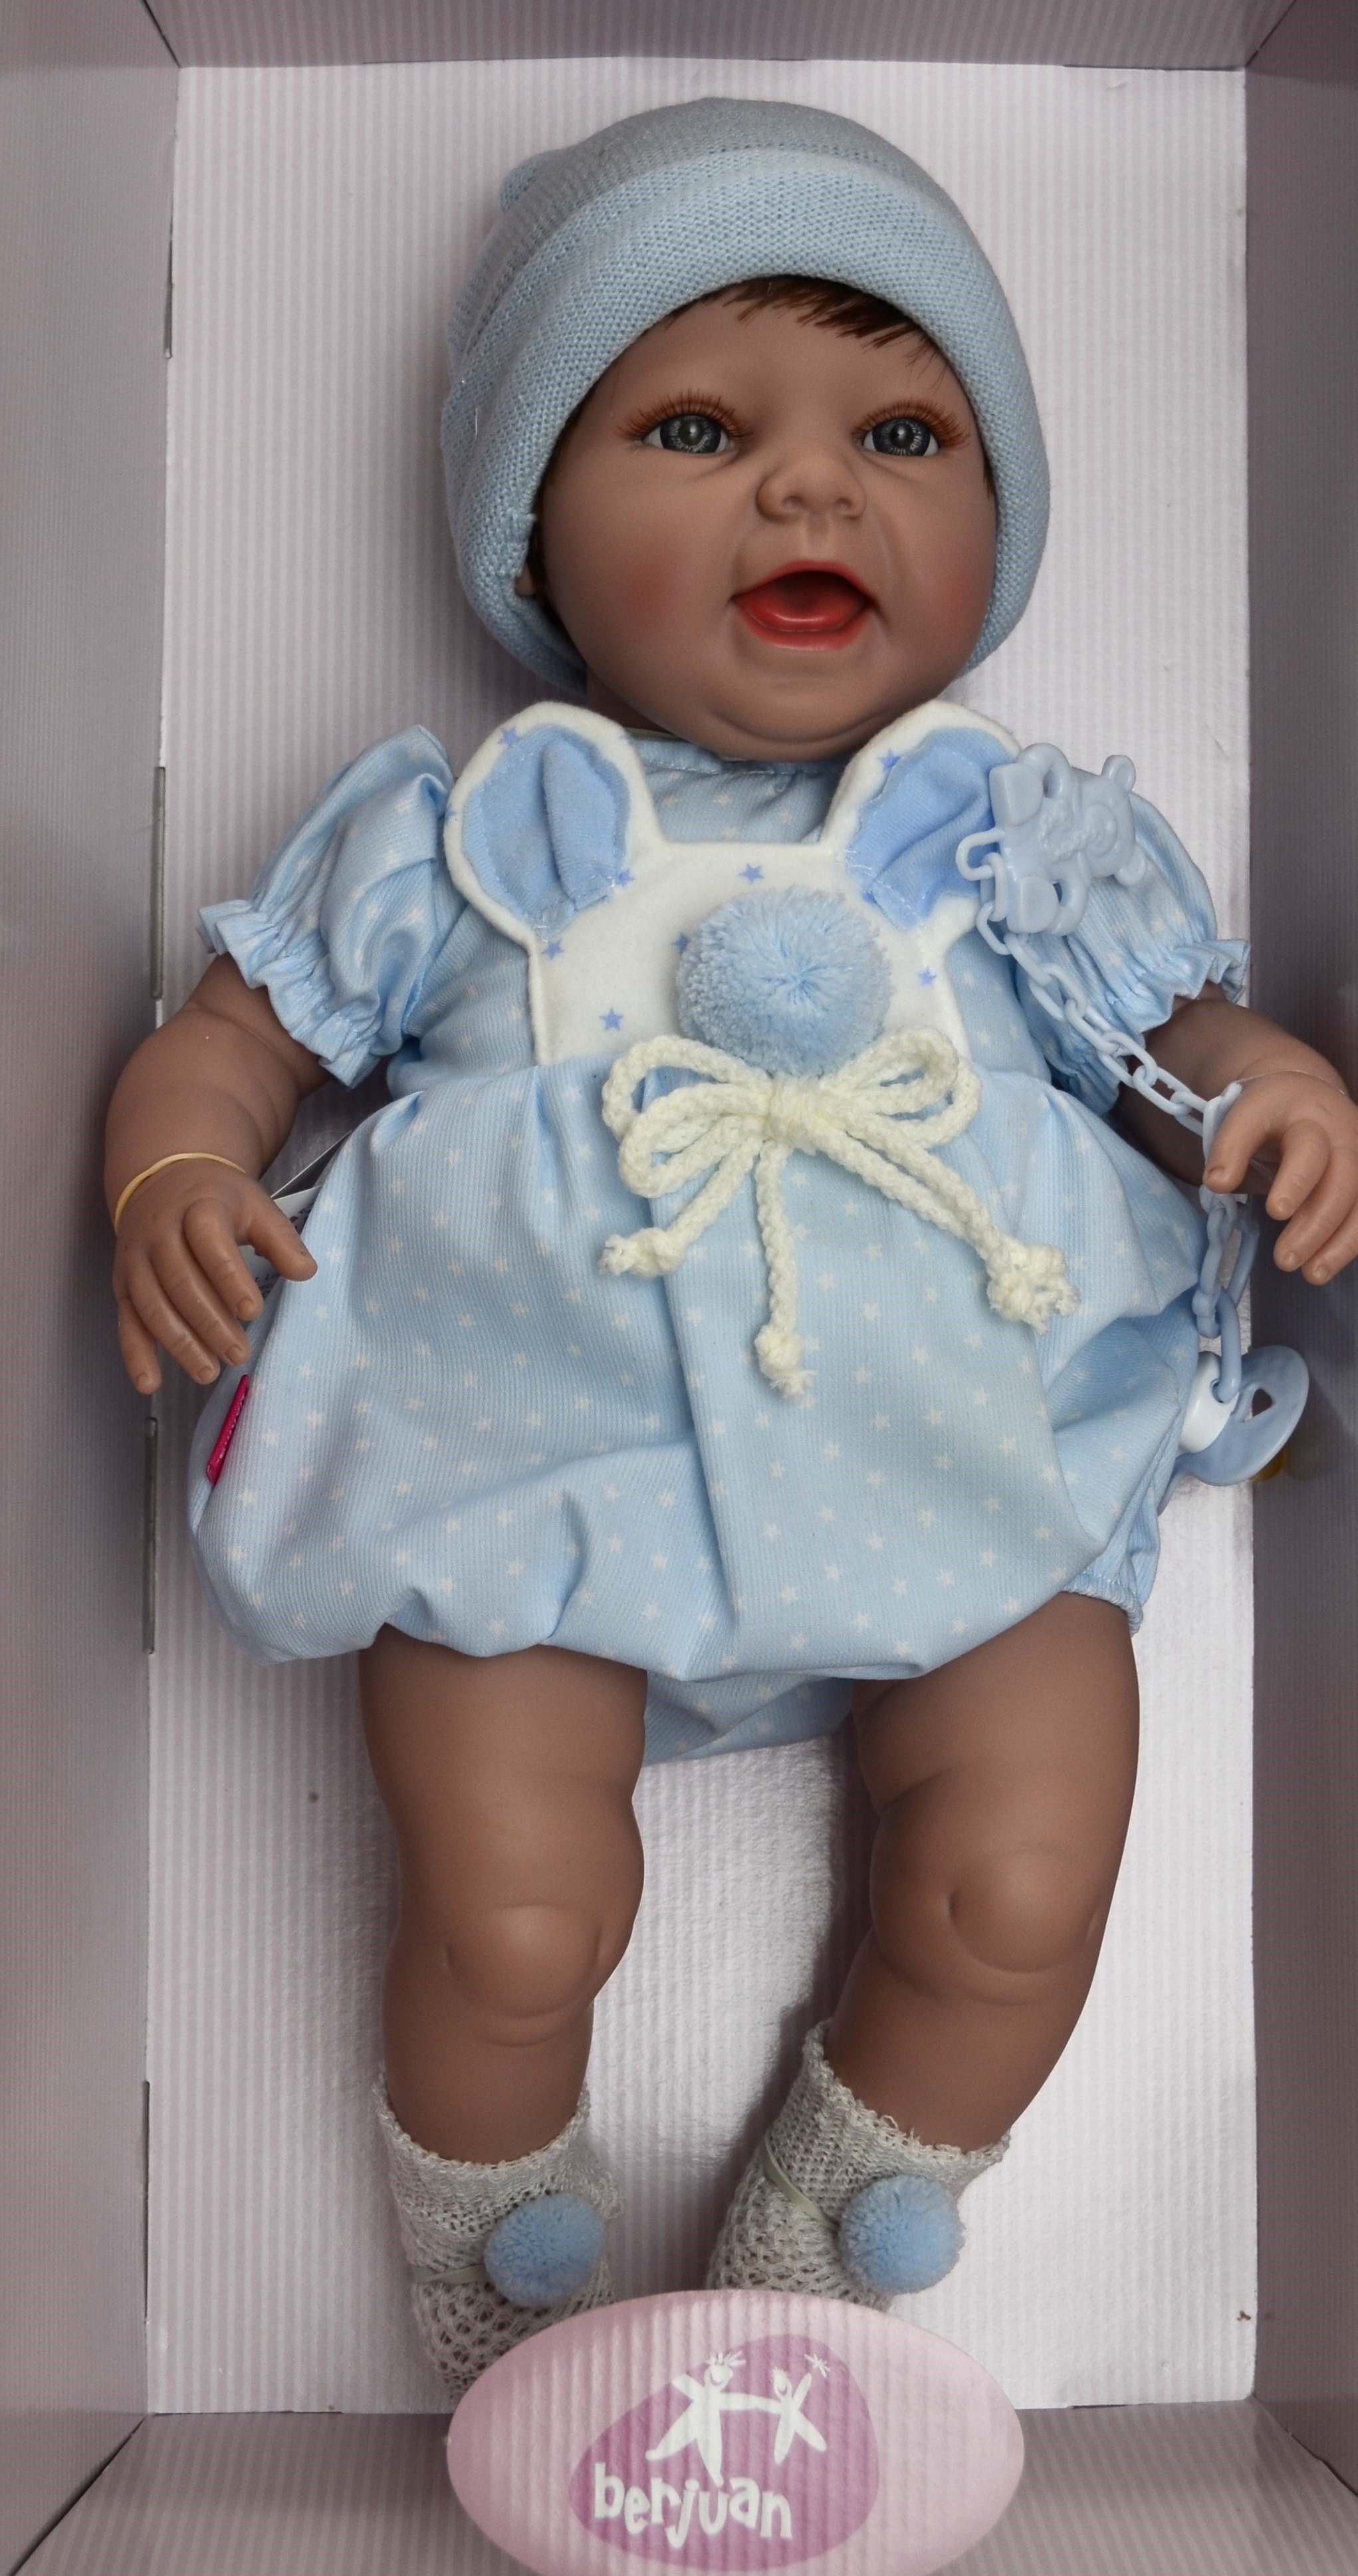 Realistická panenka chlapeček Čenda od f. Berjuan ze Španělska